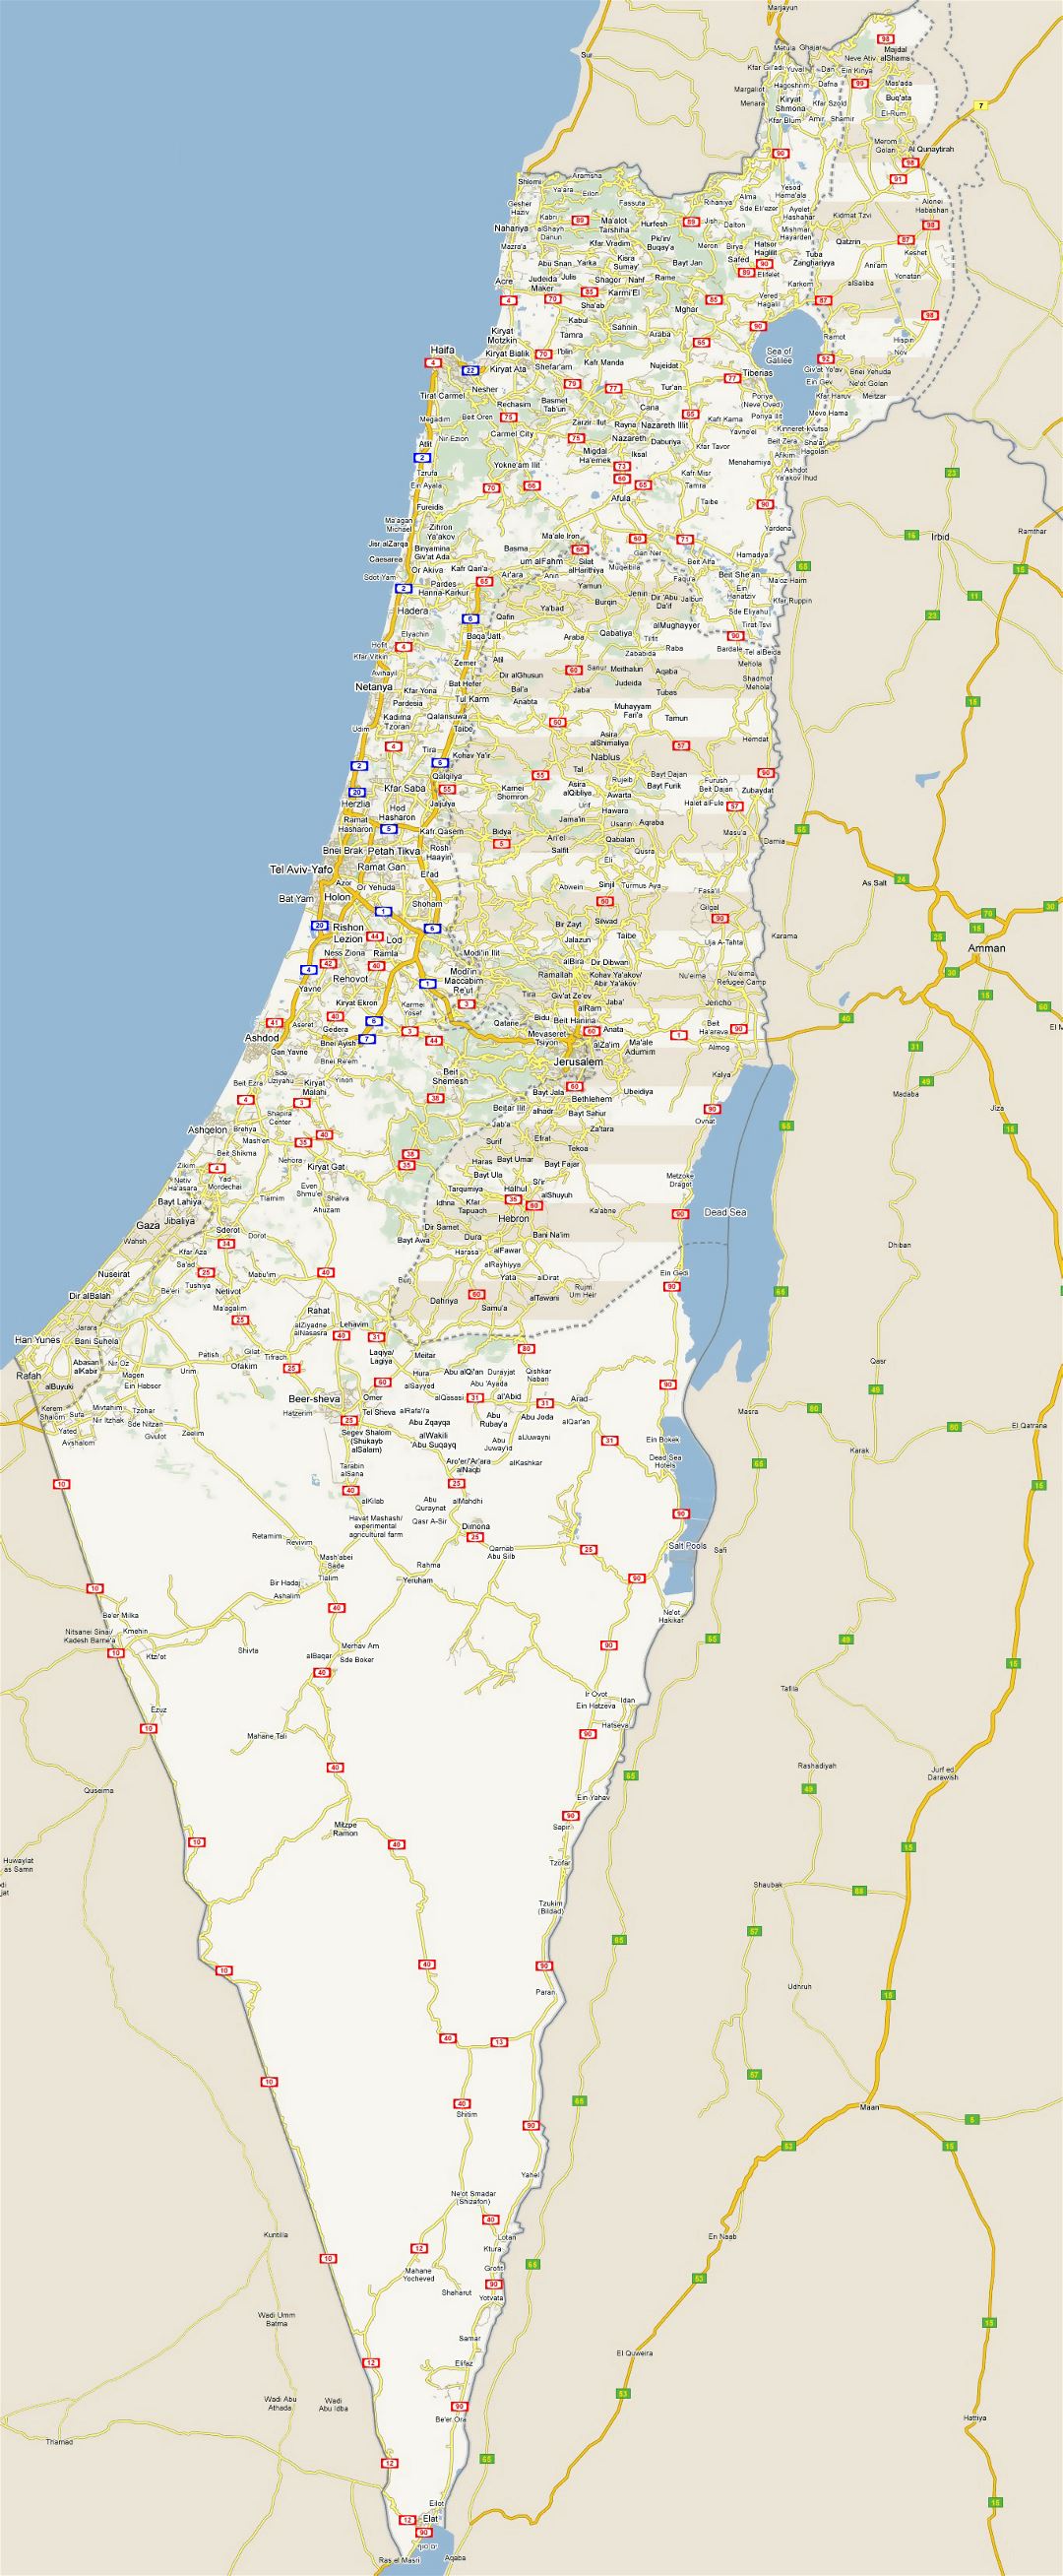 Grande detallado mapa de carreteras de Israel con todas las ciudades